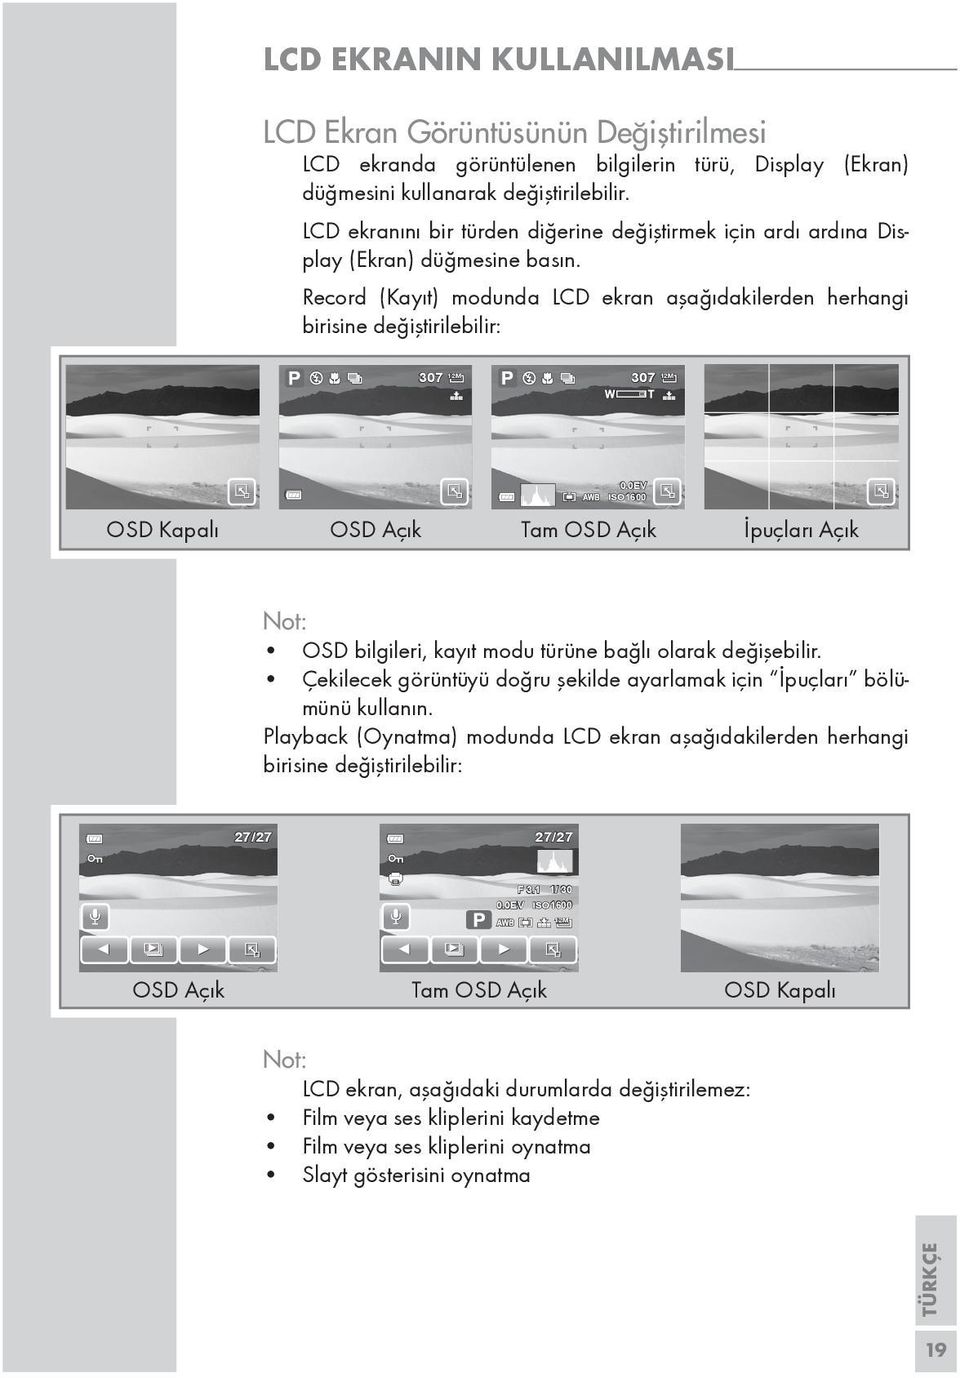 Record (Kayıt) modunda LCD ekran aşağıdakilerden herhangi birisine değiştirilebilir: 307 12M 307 12M OSD Kapalı OSD Açık Tam OSD Açık İpuçları Açık 0.